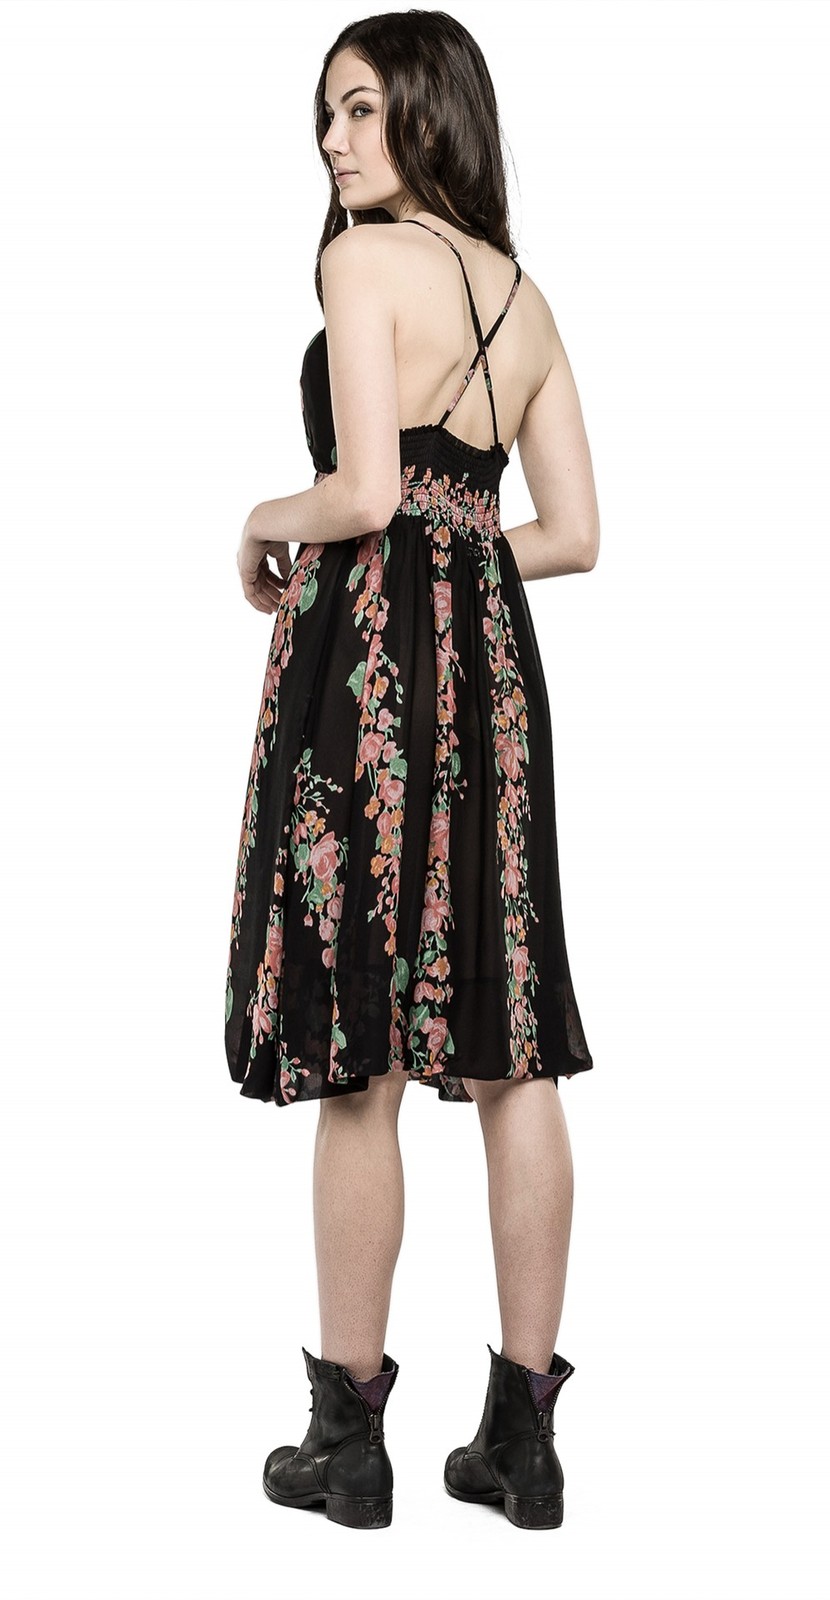 Replay női rövid virágmintás ruha 2015.02.28 fotója